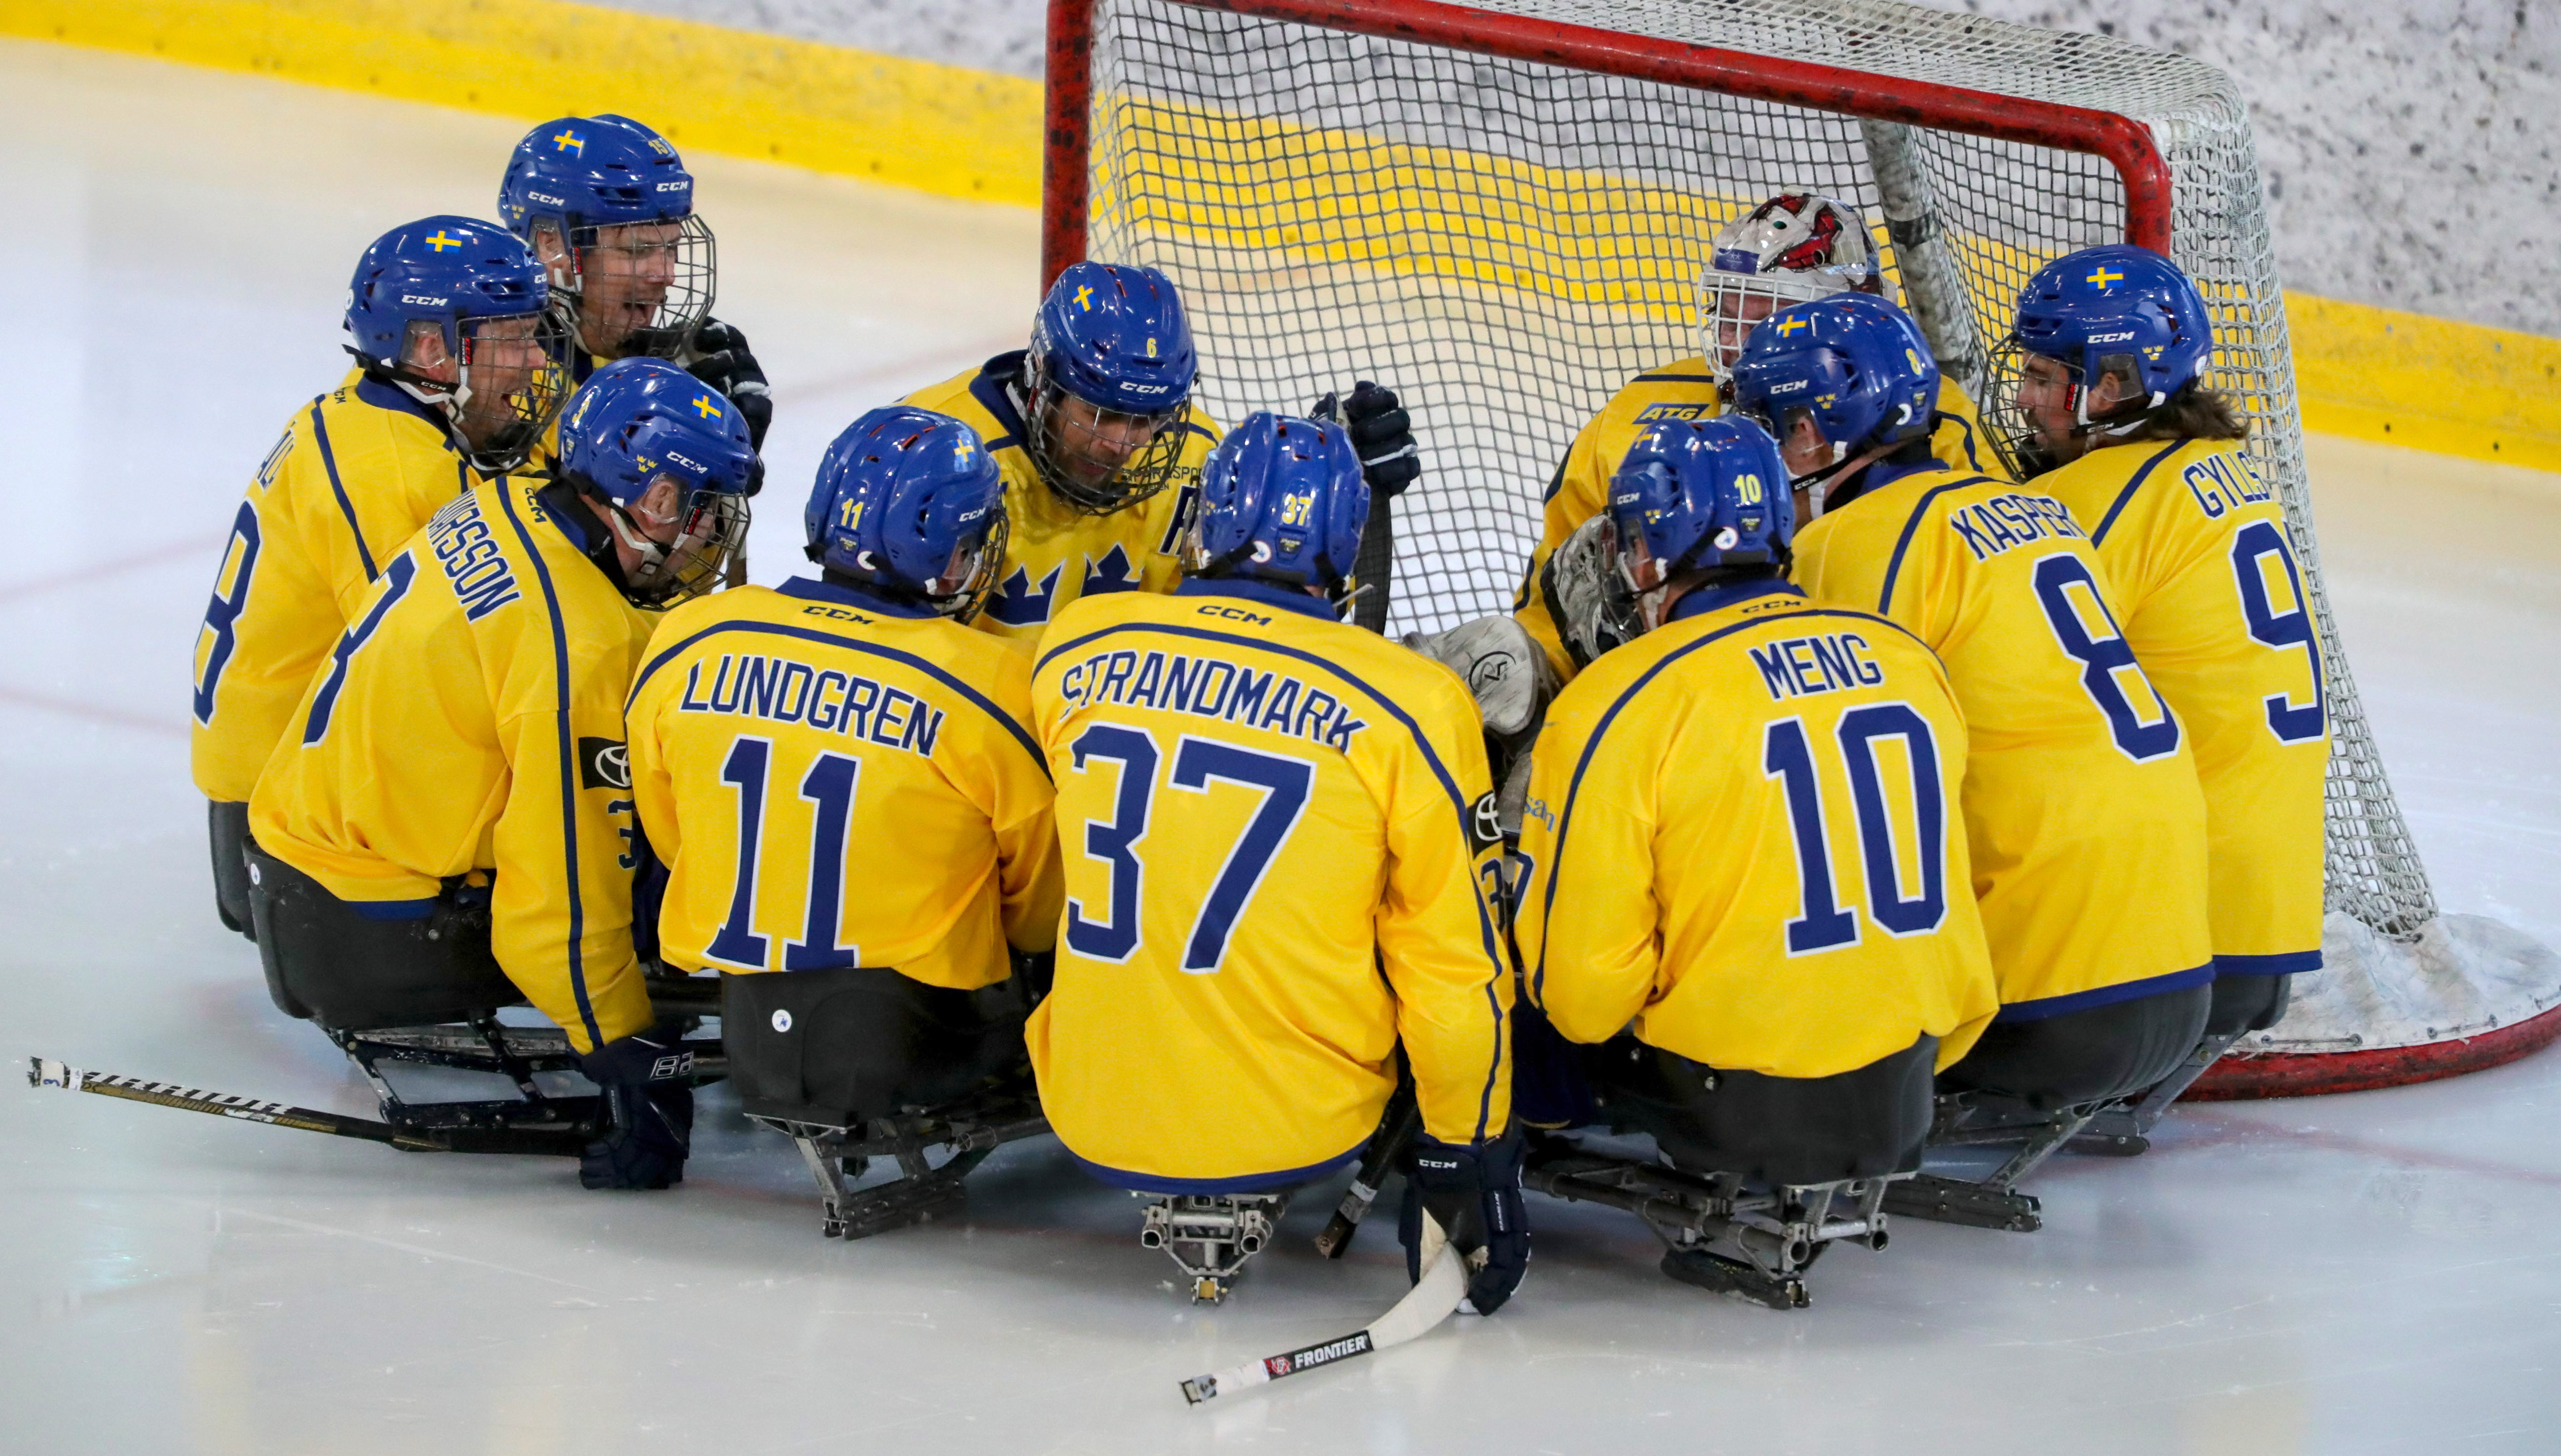 Svenska paraishockeylandslaget samlade in en ring på isen framför sitt mål.